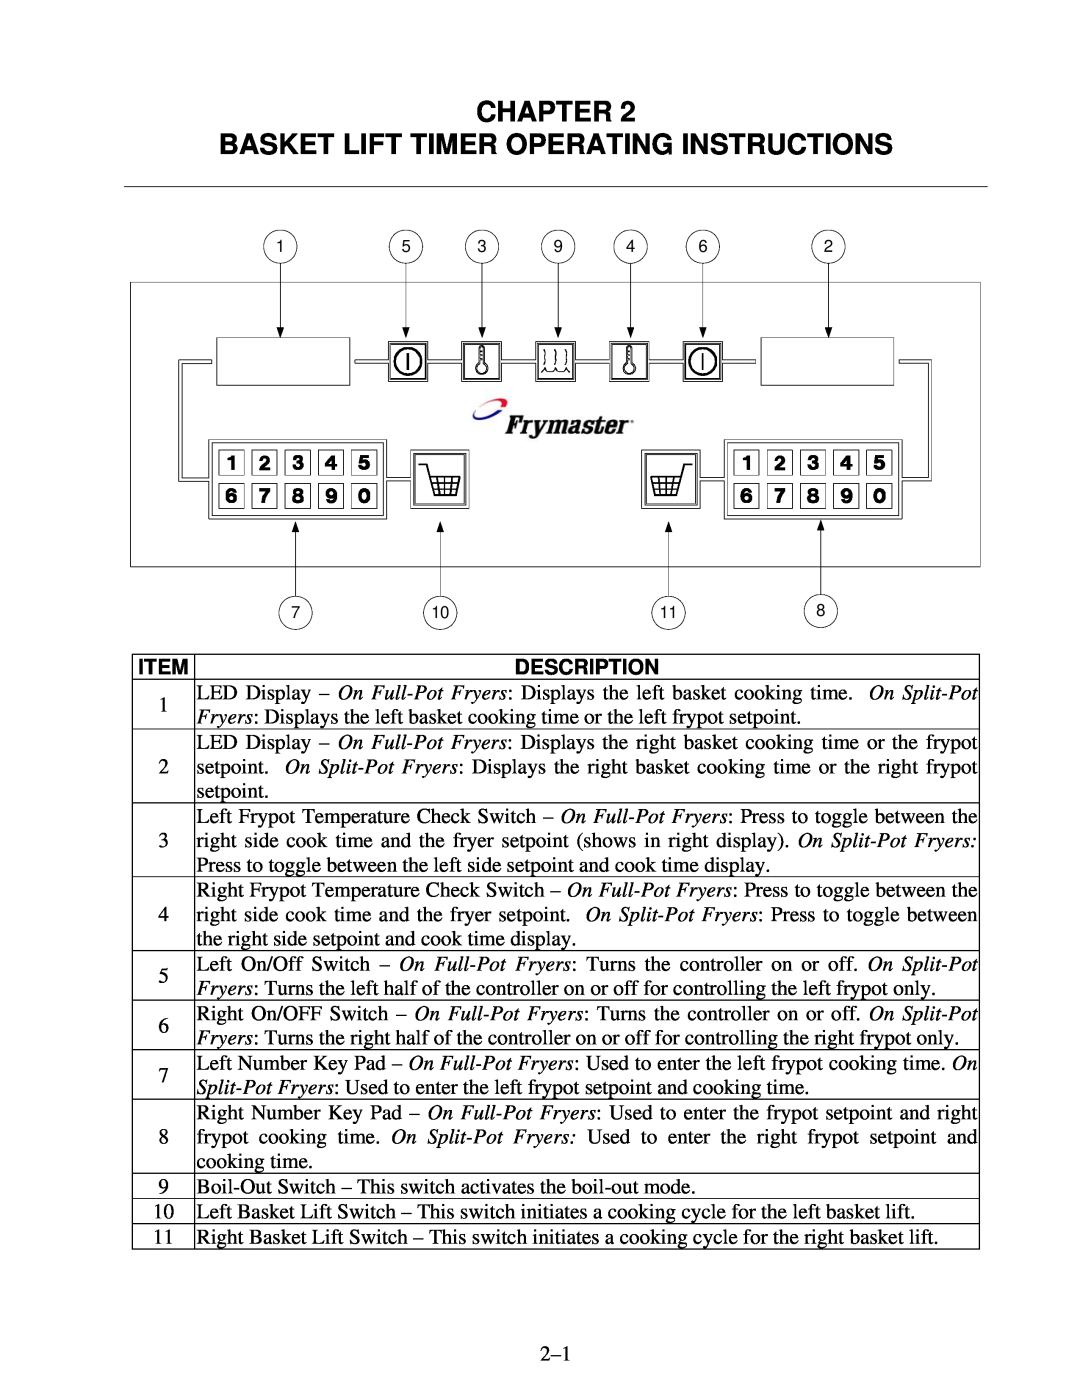 Frymaster 8195916 user manual Chapter Basket Lift Timer Operating Instructions, Description 